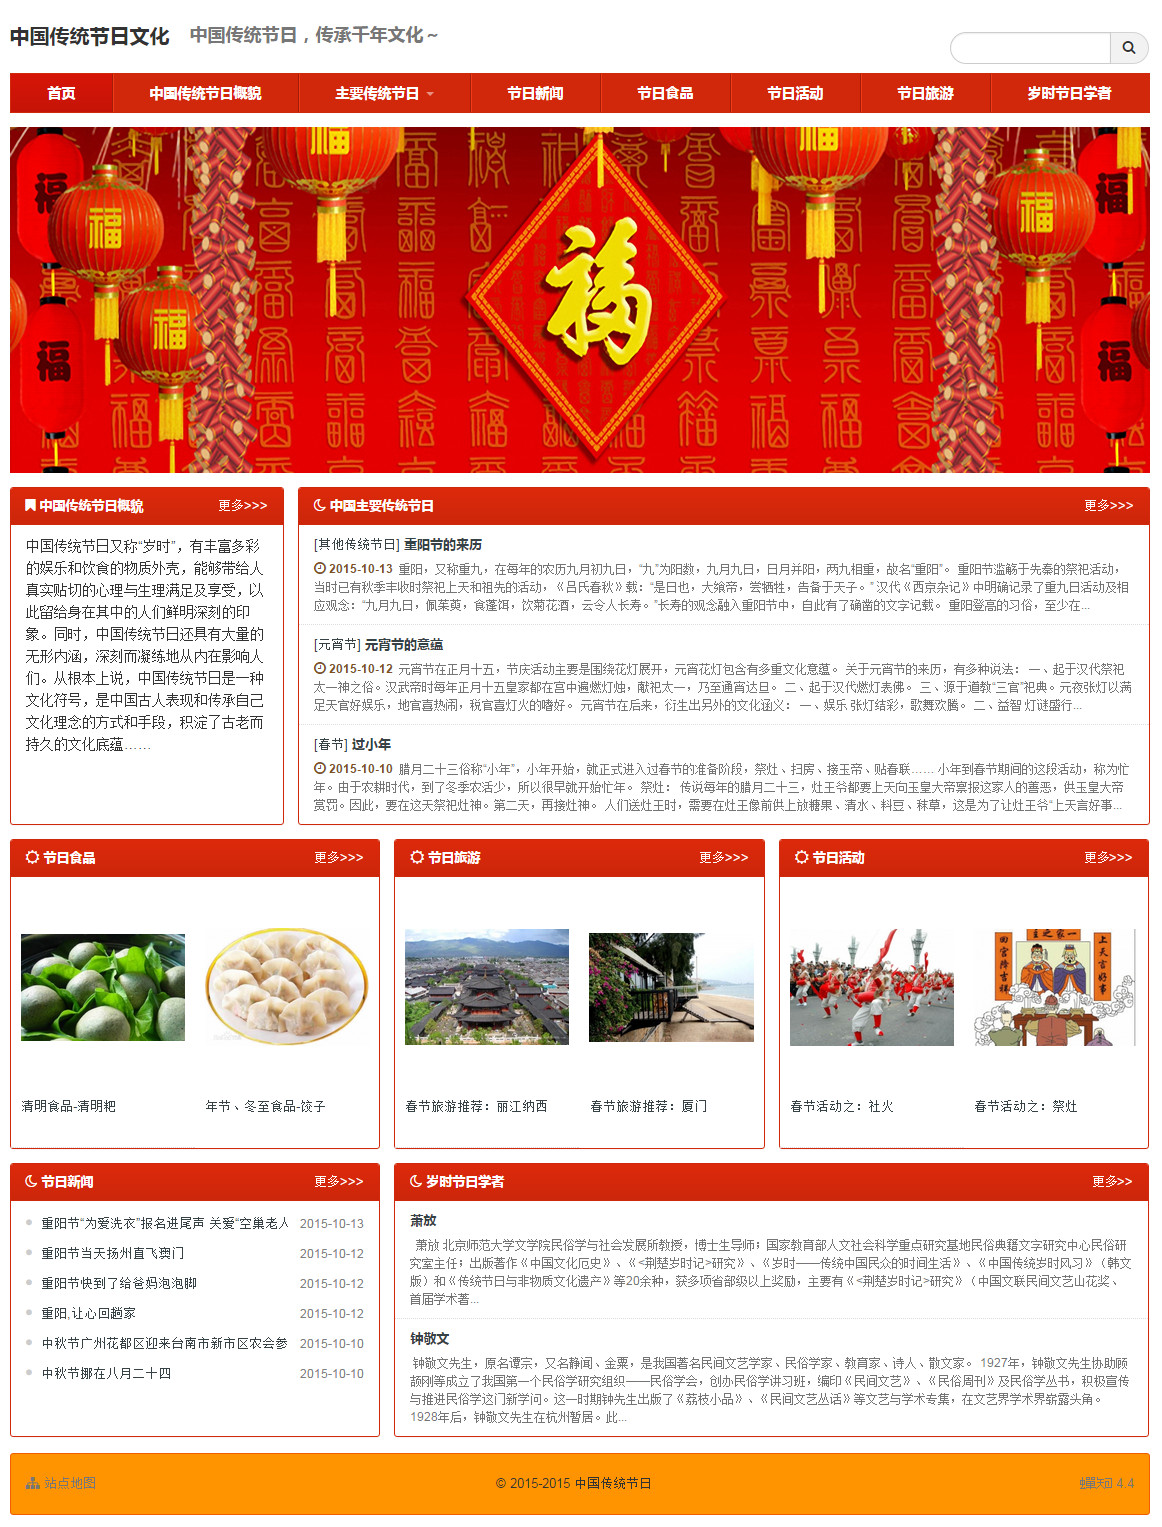 中国传统节日文化网